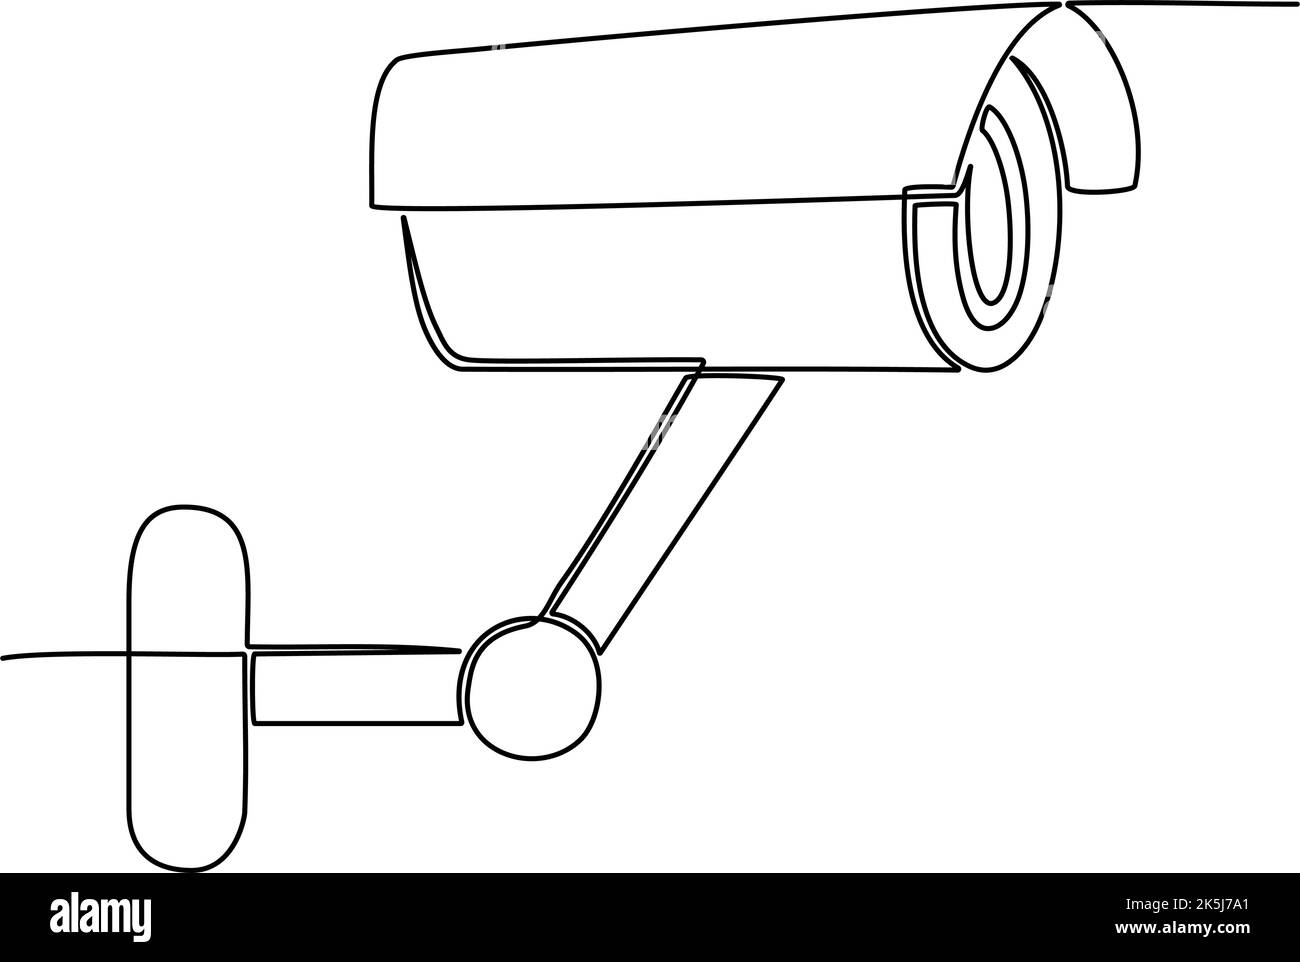 Fortlaufende einzeilige Zeichnung der CCTV-Kamera. Vektorgrafik Stock Vektor